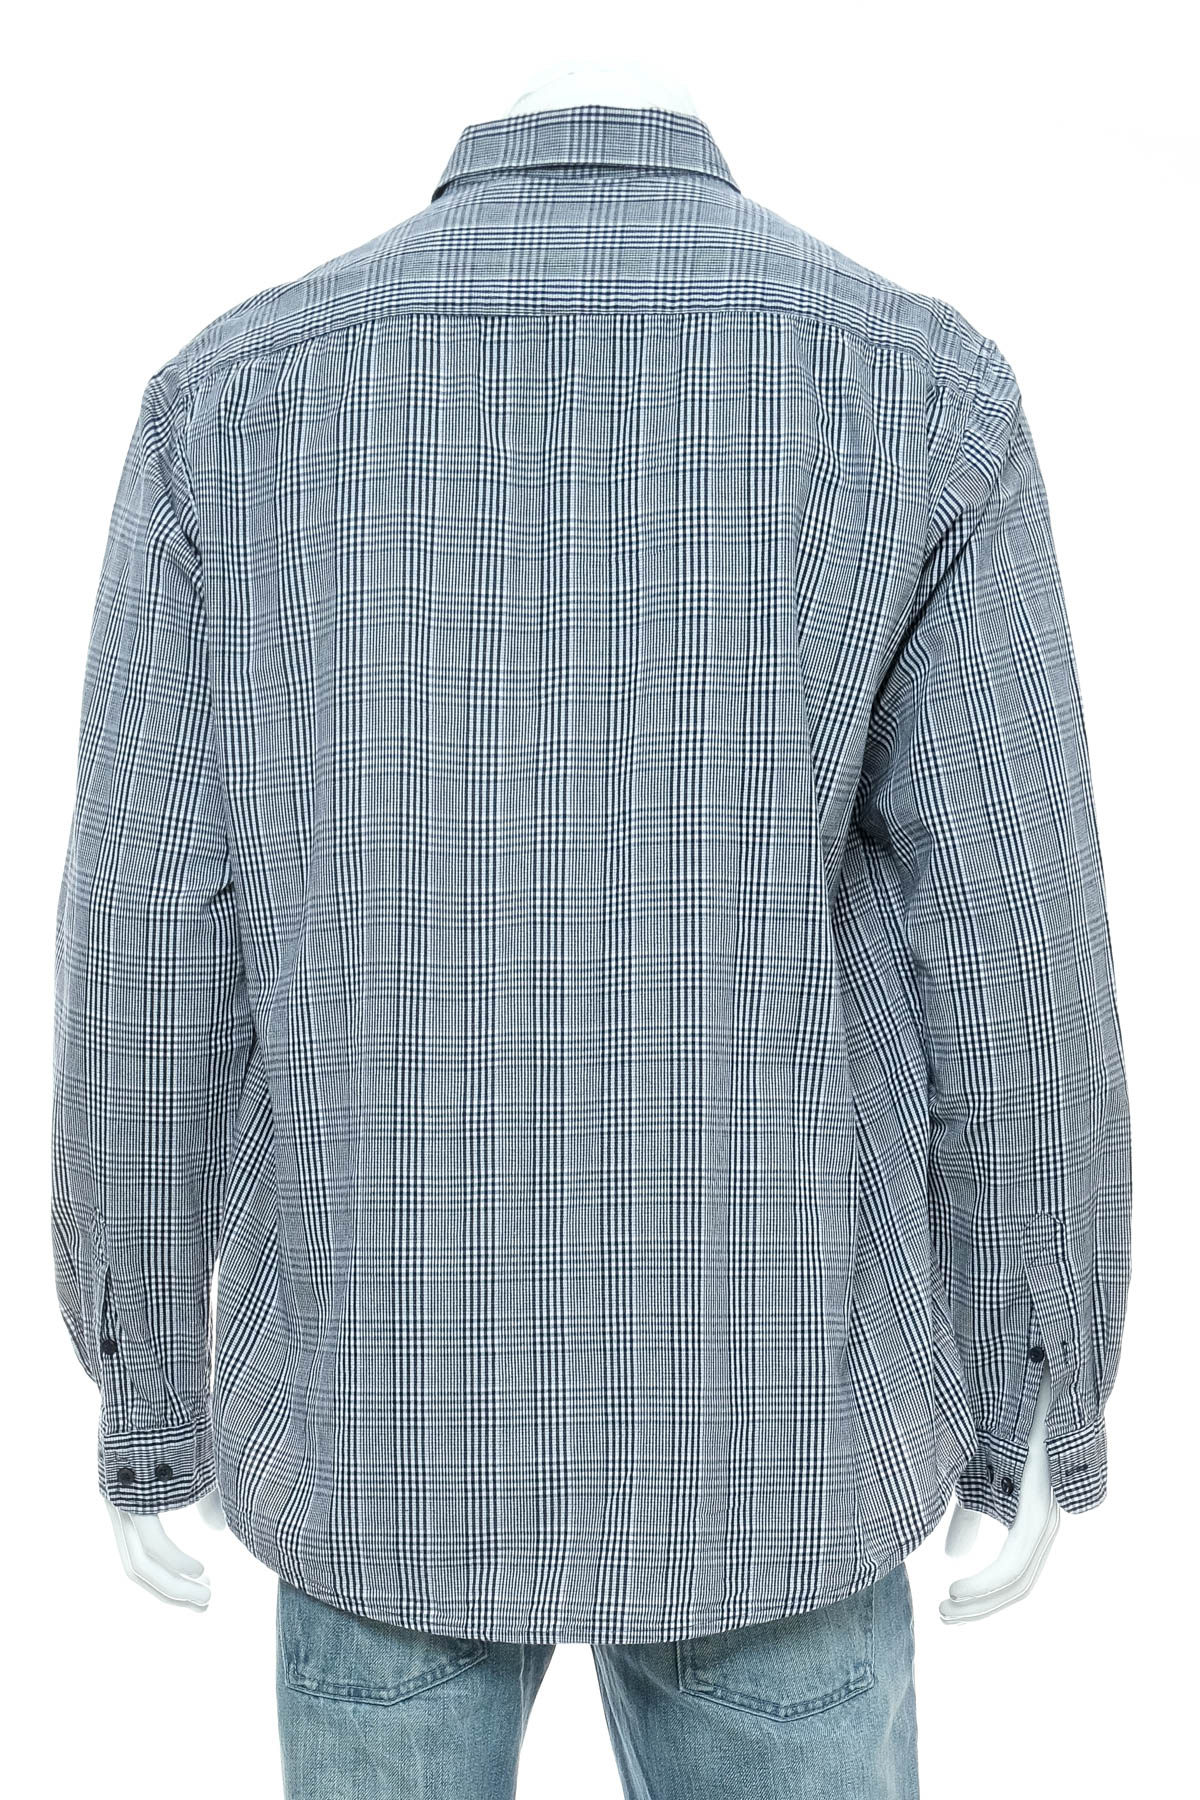 Ανδρικό πουκάμισο - Watson's - 1